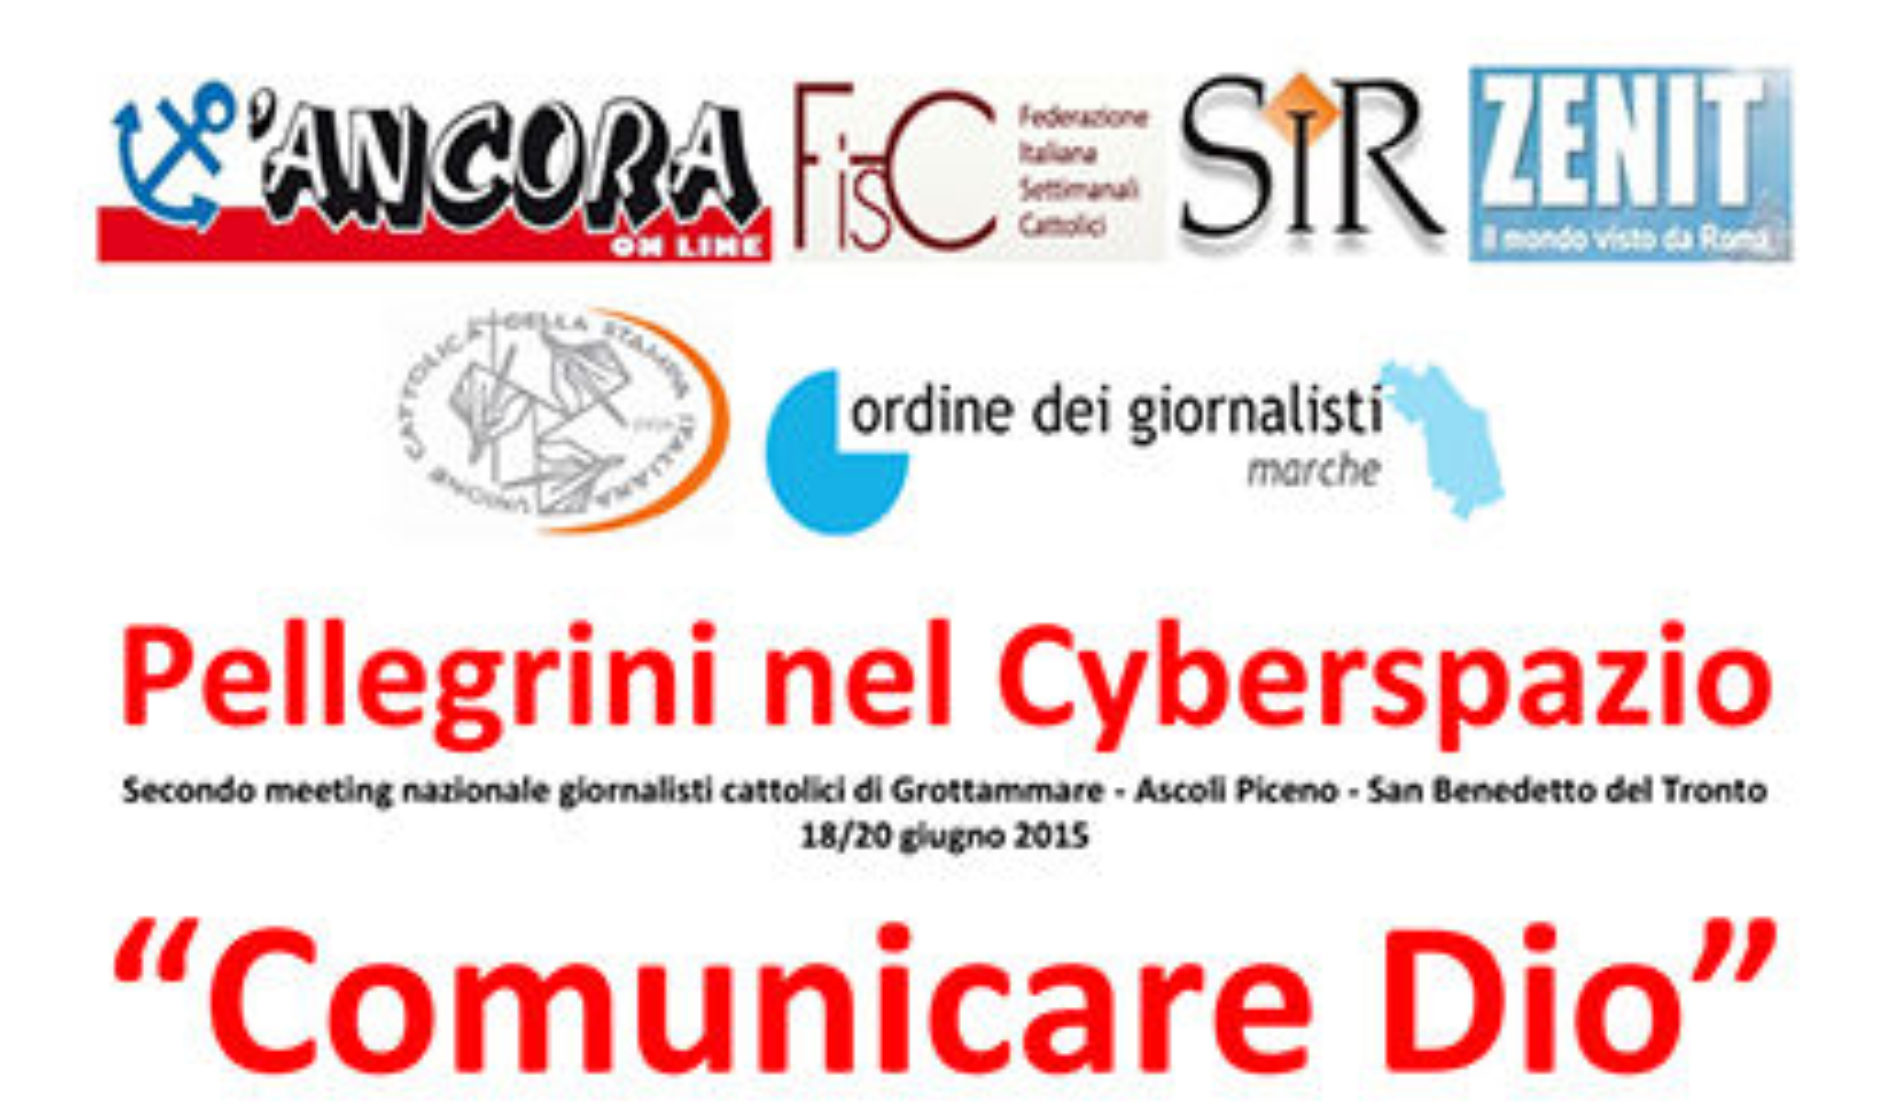 “Pellegrini nel Cyberspazio”, il meeting dei giornalisti cattolici. Appuntamento a Grottammare, Ascoli Piceno e San Benedetto del Tronto dal 18 al 20 giugno.